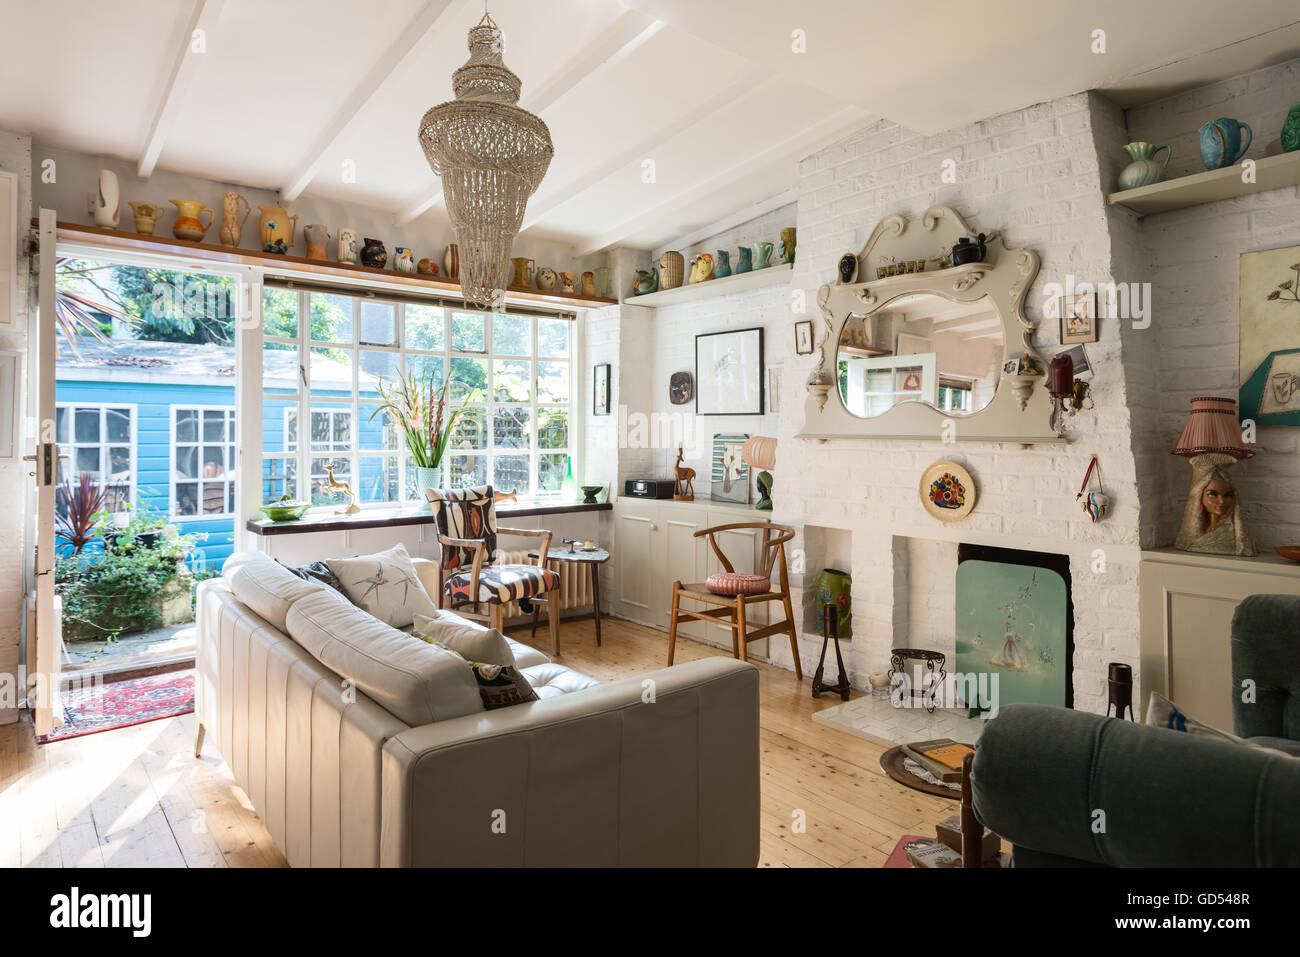 Helle und luftige Wohnzimmer mit Kaminsims Spiegel, Hans Wegner "Wishbone" Stuhl und dekorative Keramik, die auf einem hohen Regal angezeigt Stockfoto